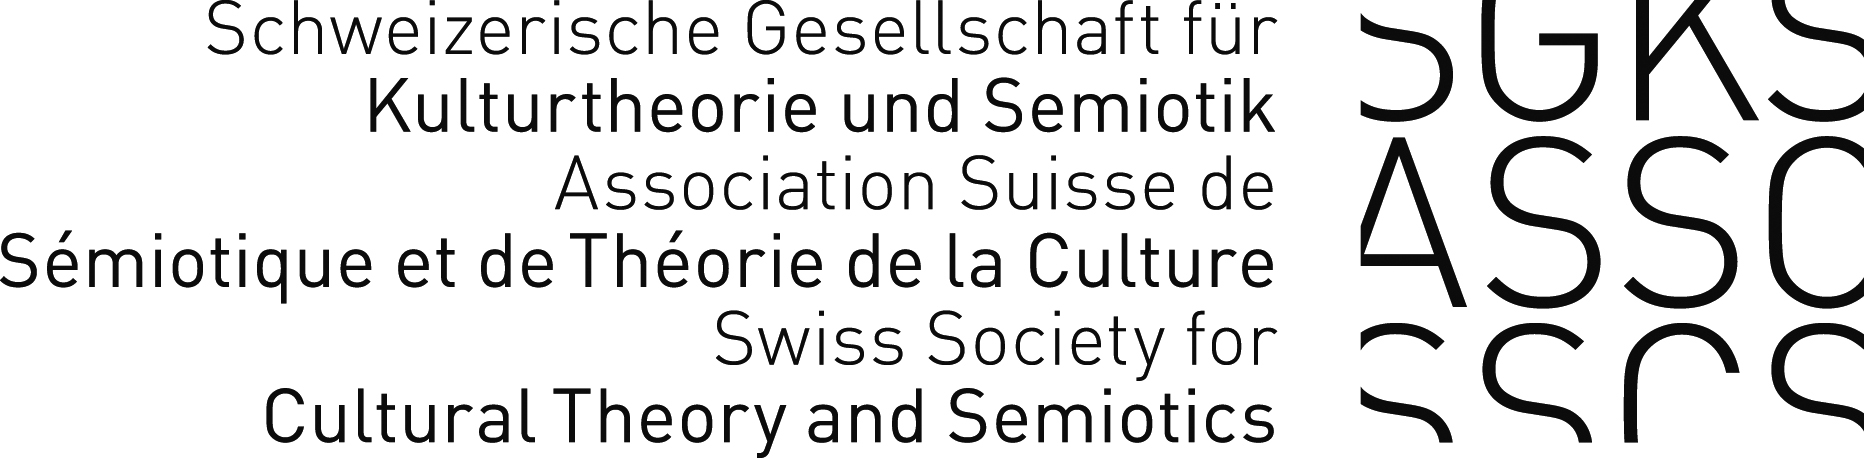 Schweizerische Gesellschaft für Kulturtheorie und Semiotik